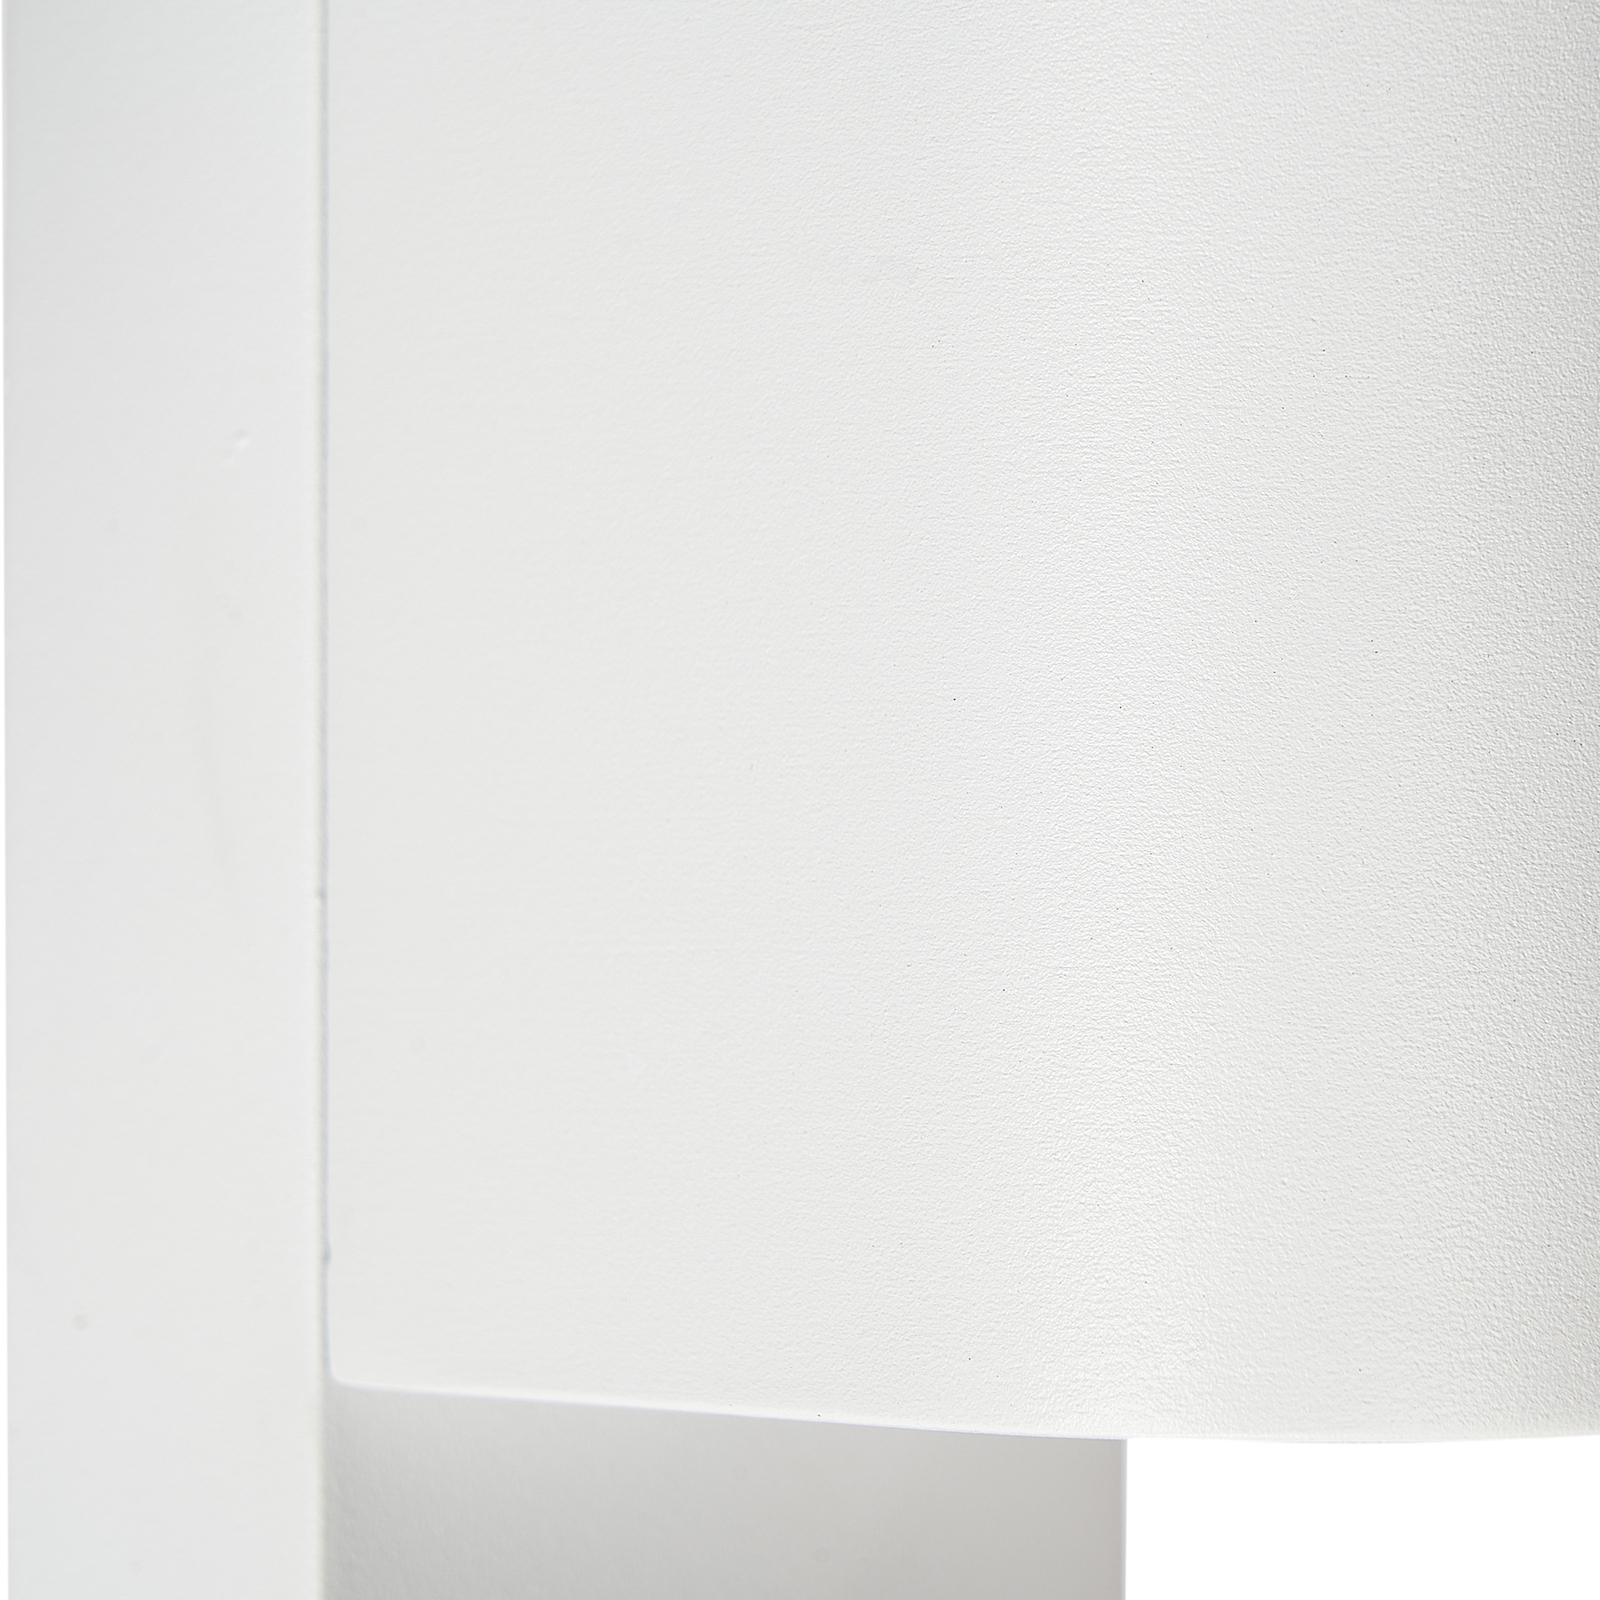 Prios outdoor wall light Tetje, white, round, sensor, set of 2